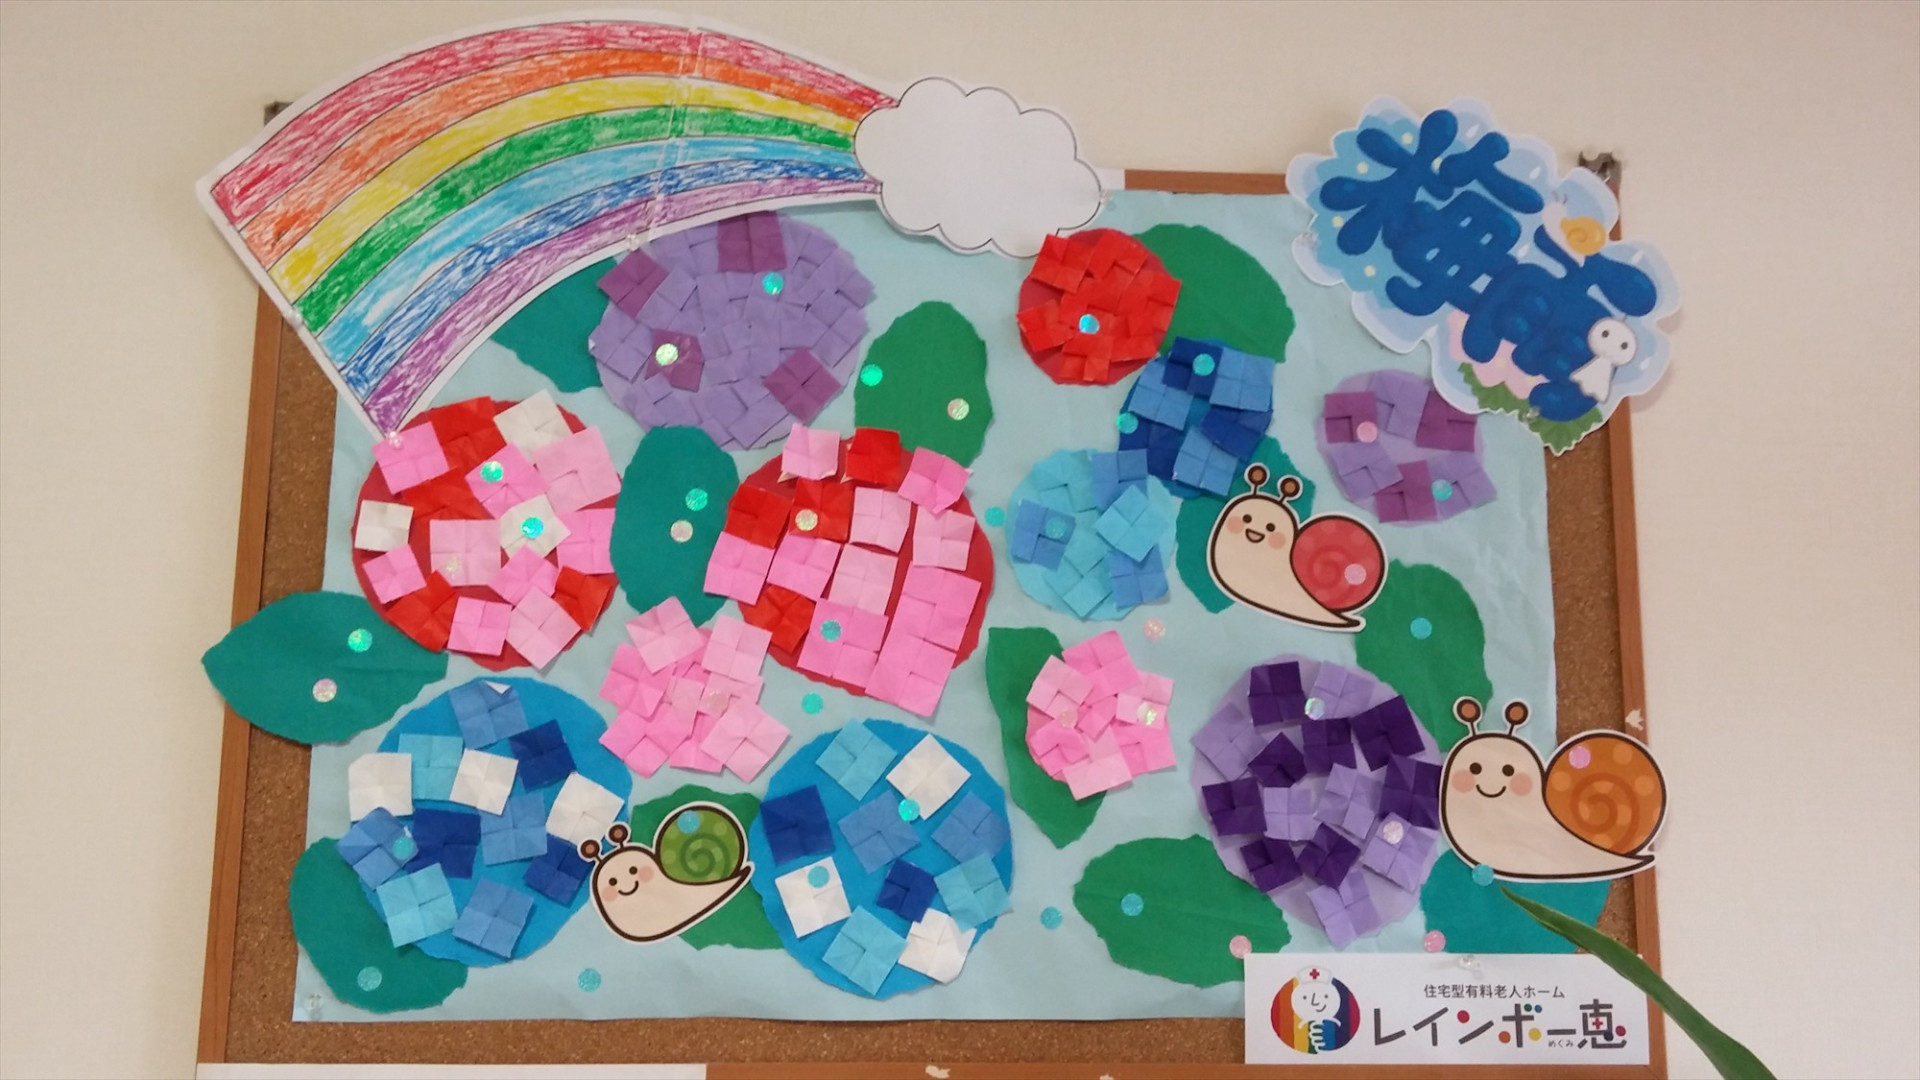 虹と紫陽花 高松市の老人ホーム レインボー恵はブログにて施設を紹介